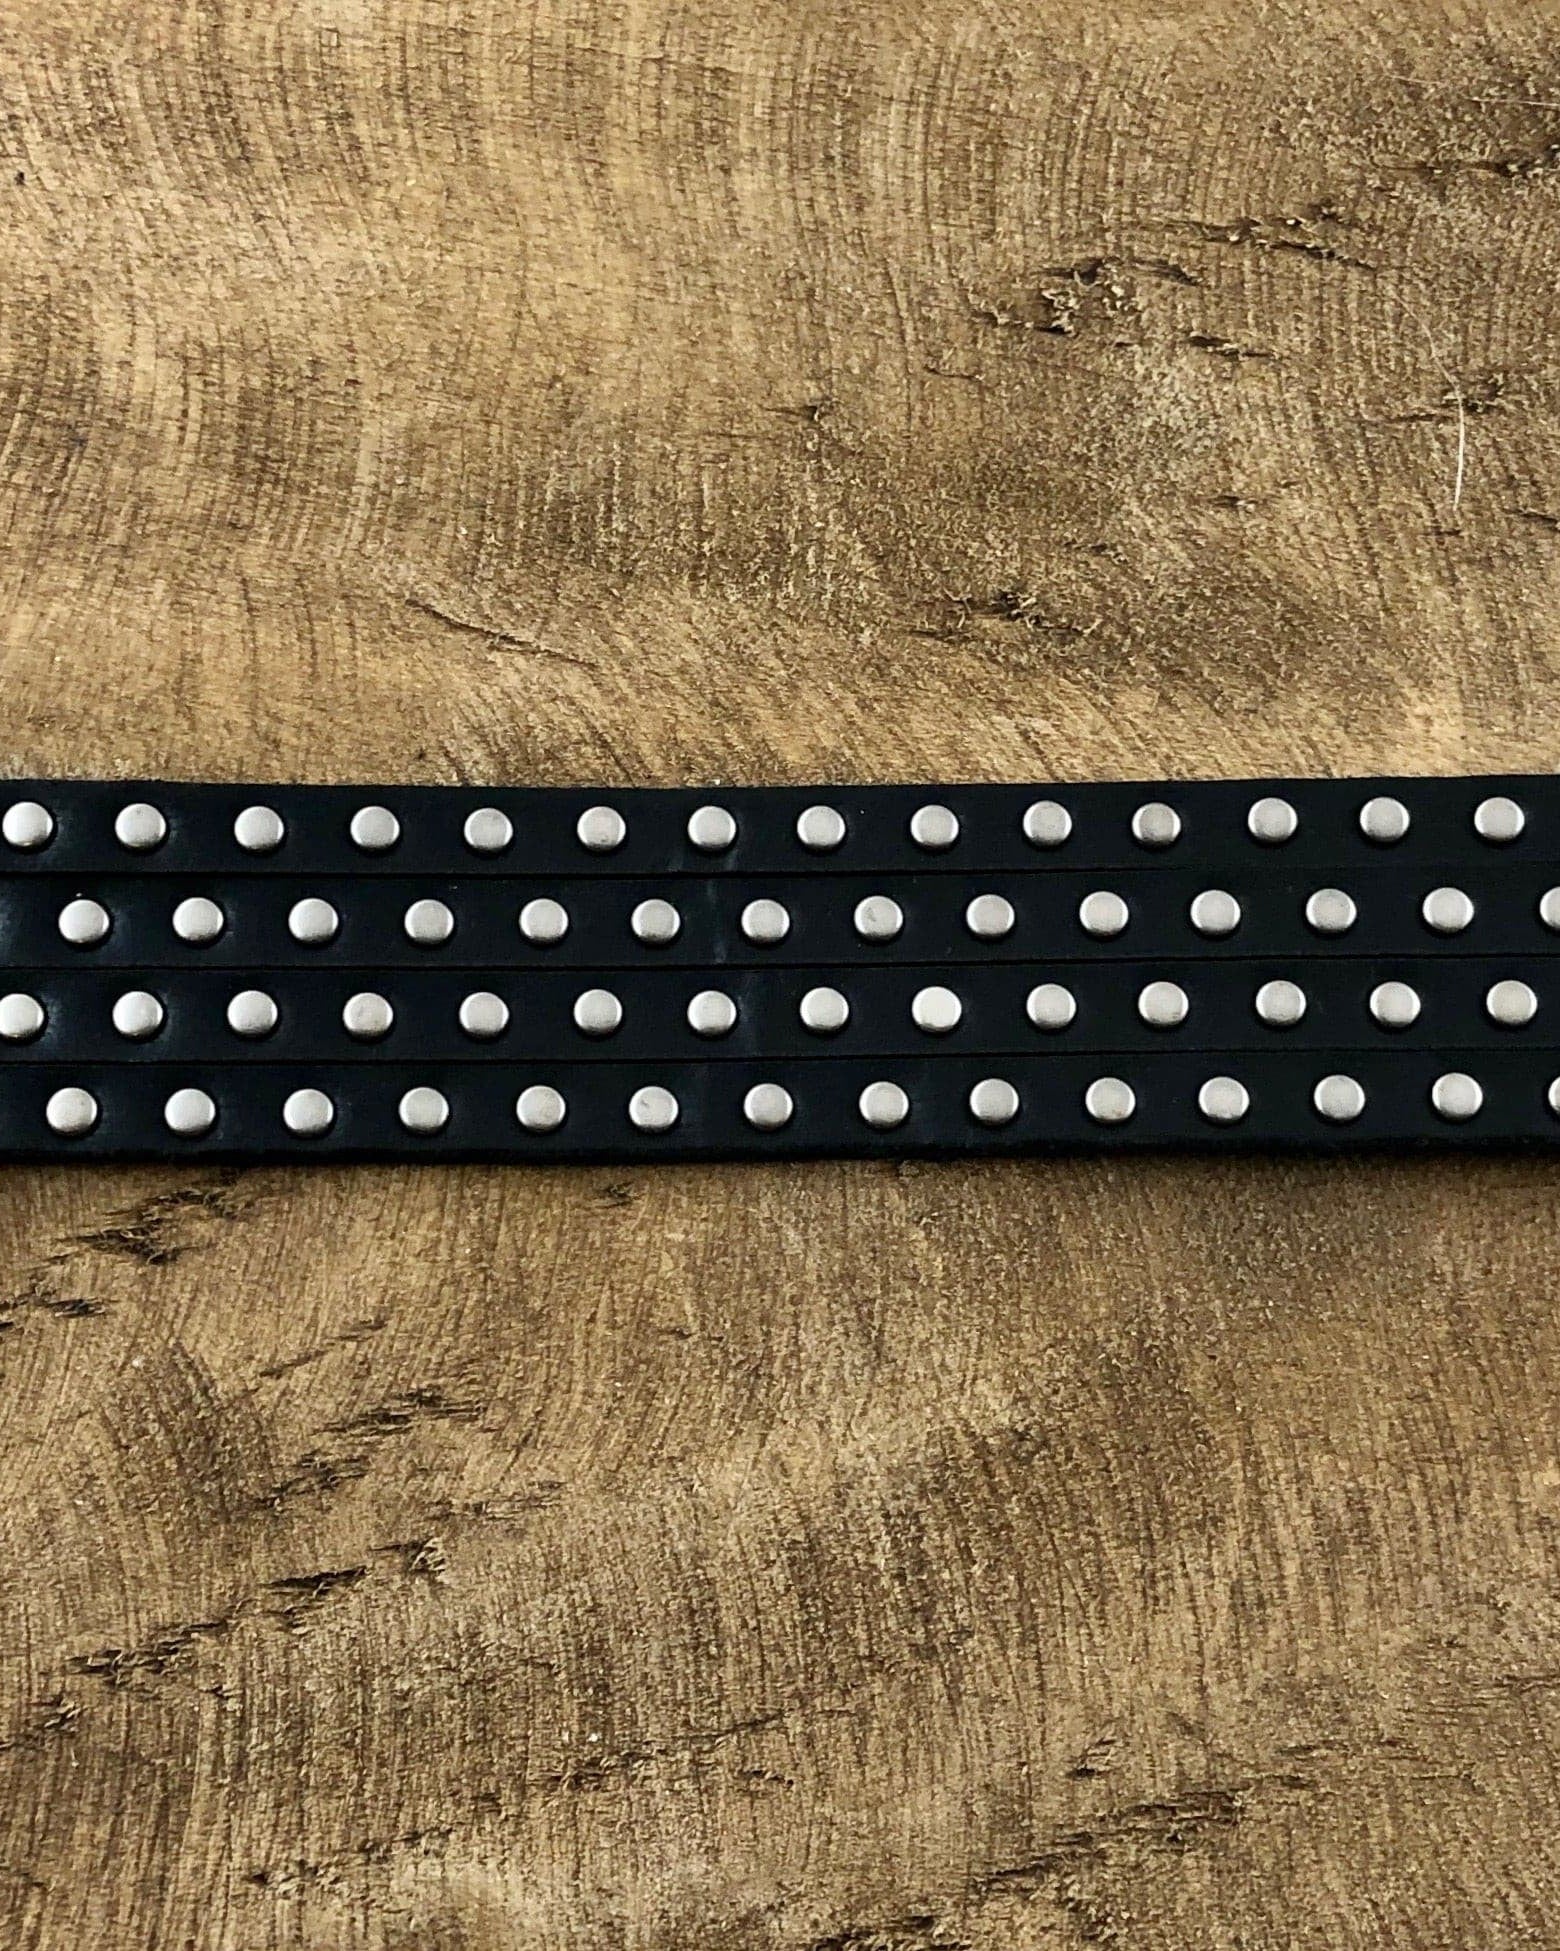 Black Leather Stud Bracelet.